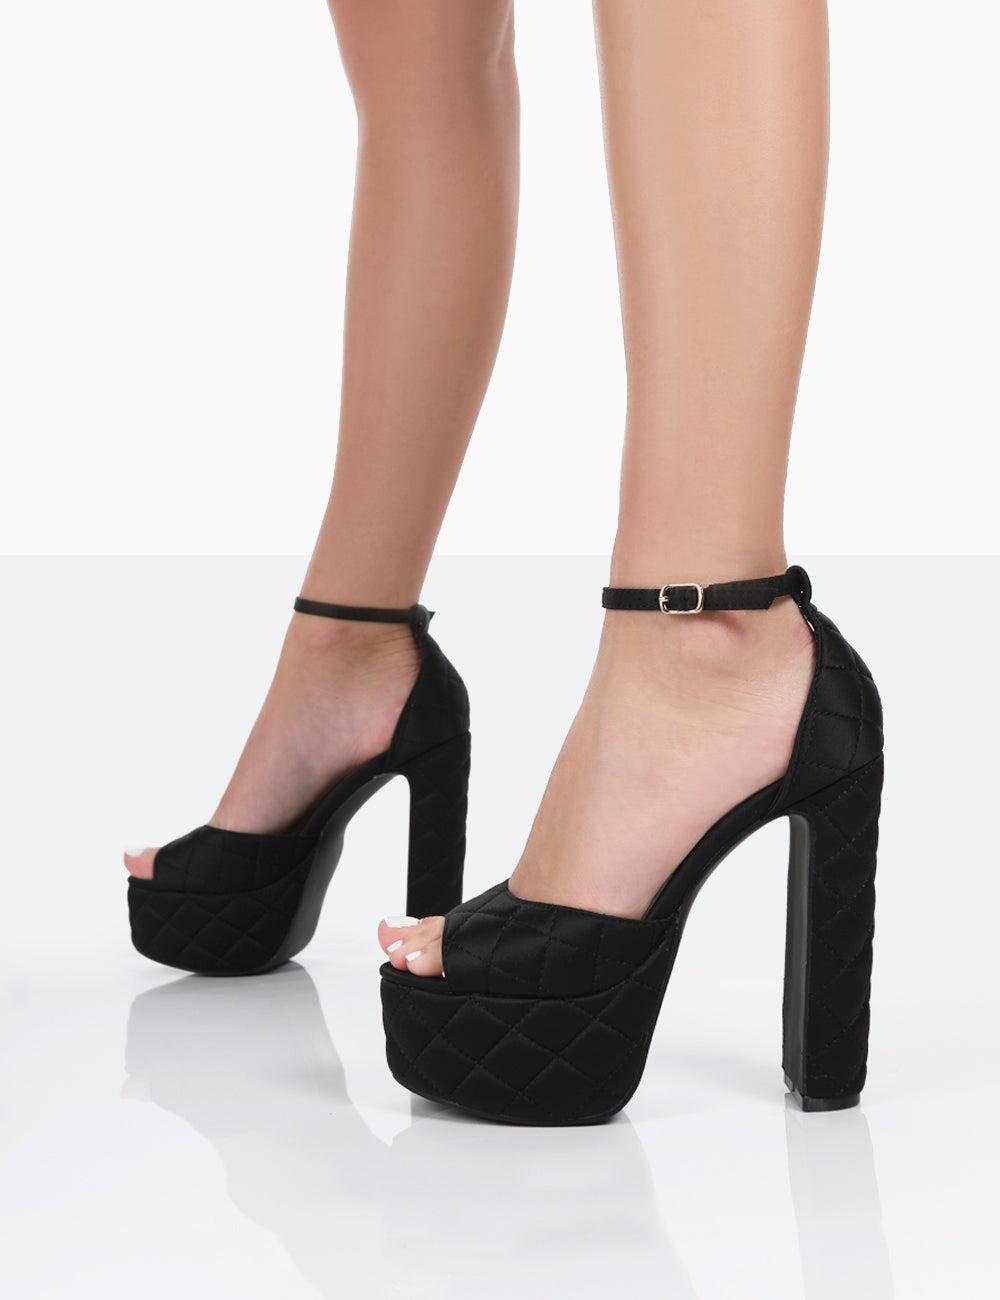 CHIKO Emeralda Open Toe Block Heels Flats Sandals